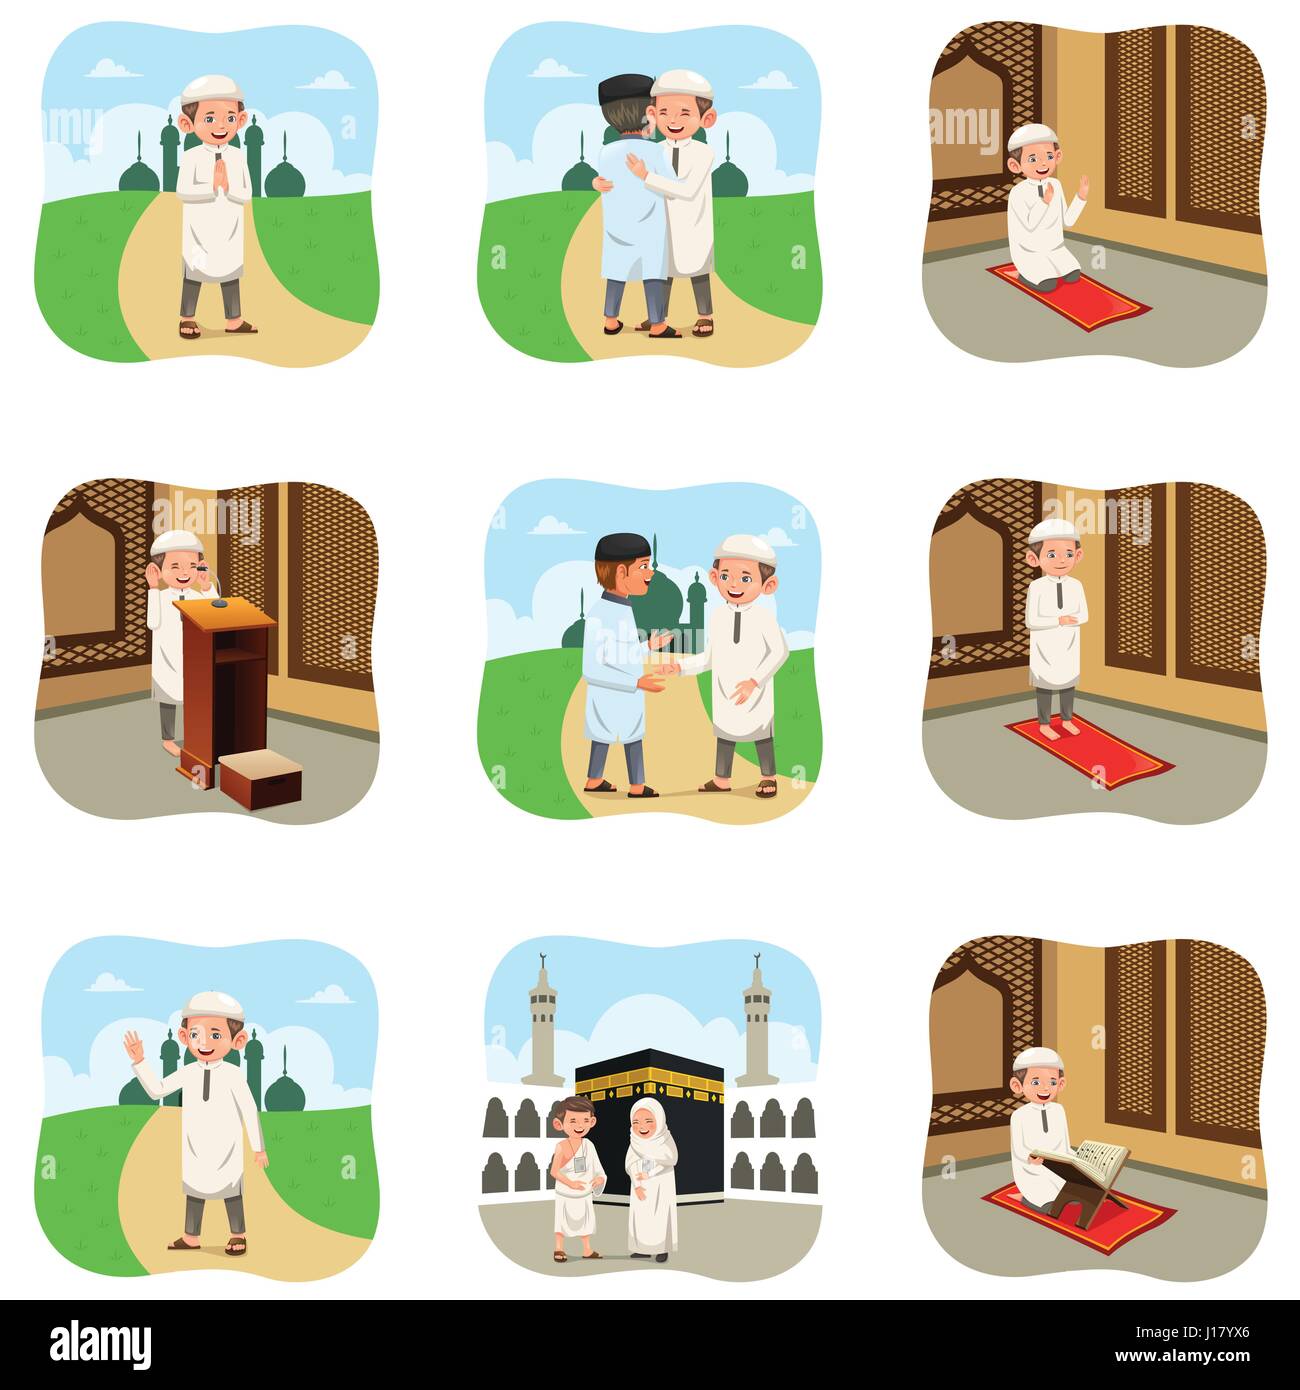 Eine Vektor-Illustration der muslimischen Menschen tun ihre religiösen Aktivitäten Stock Vektor